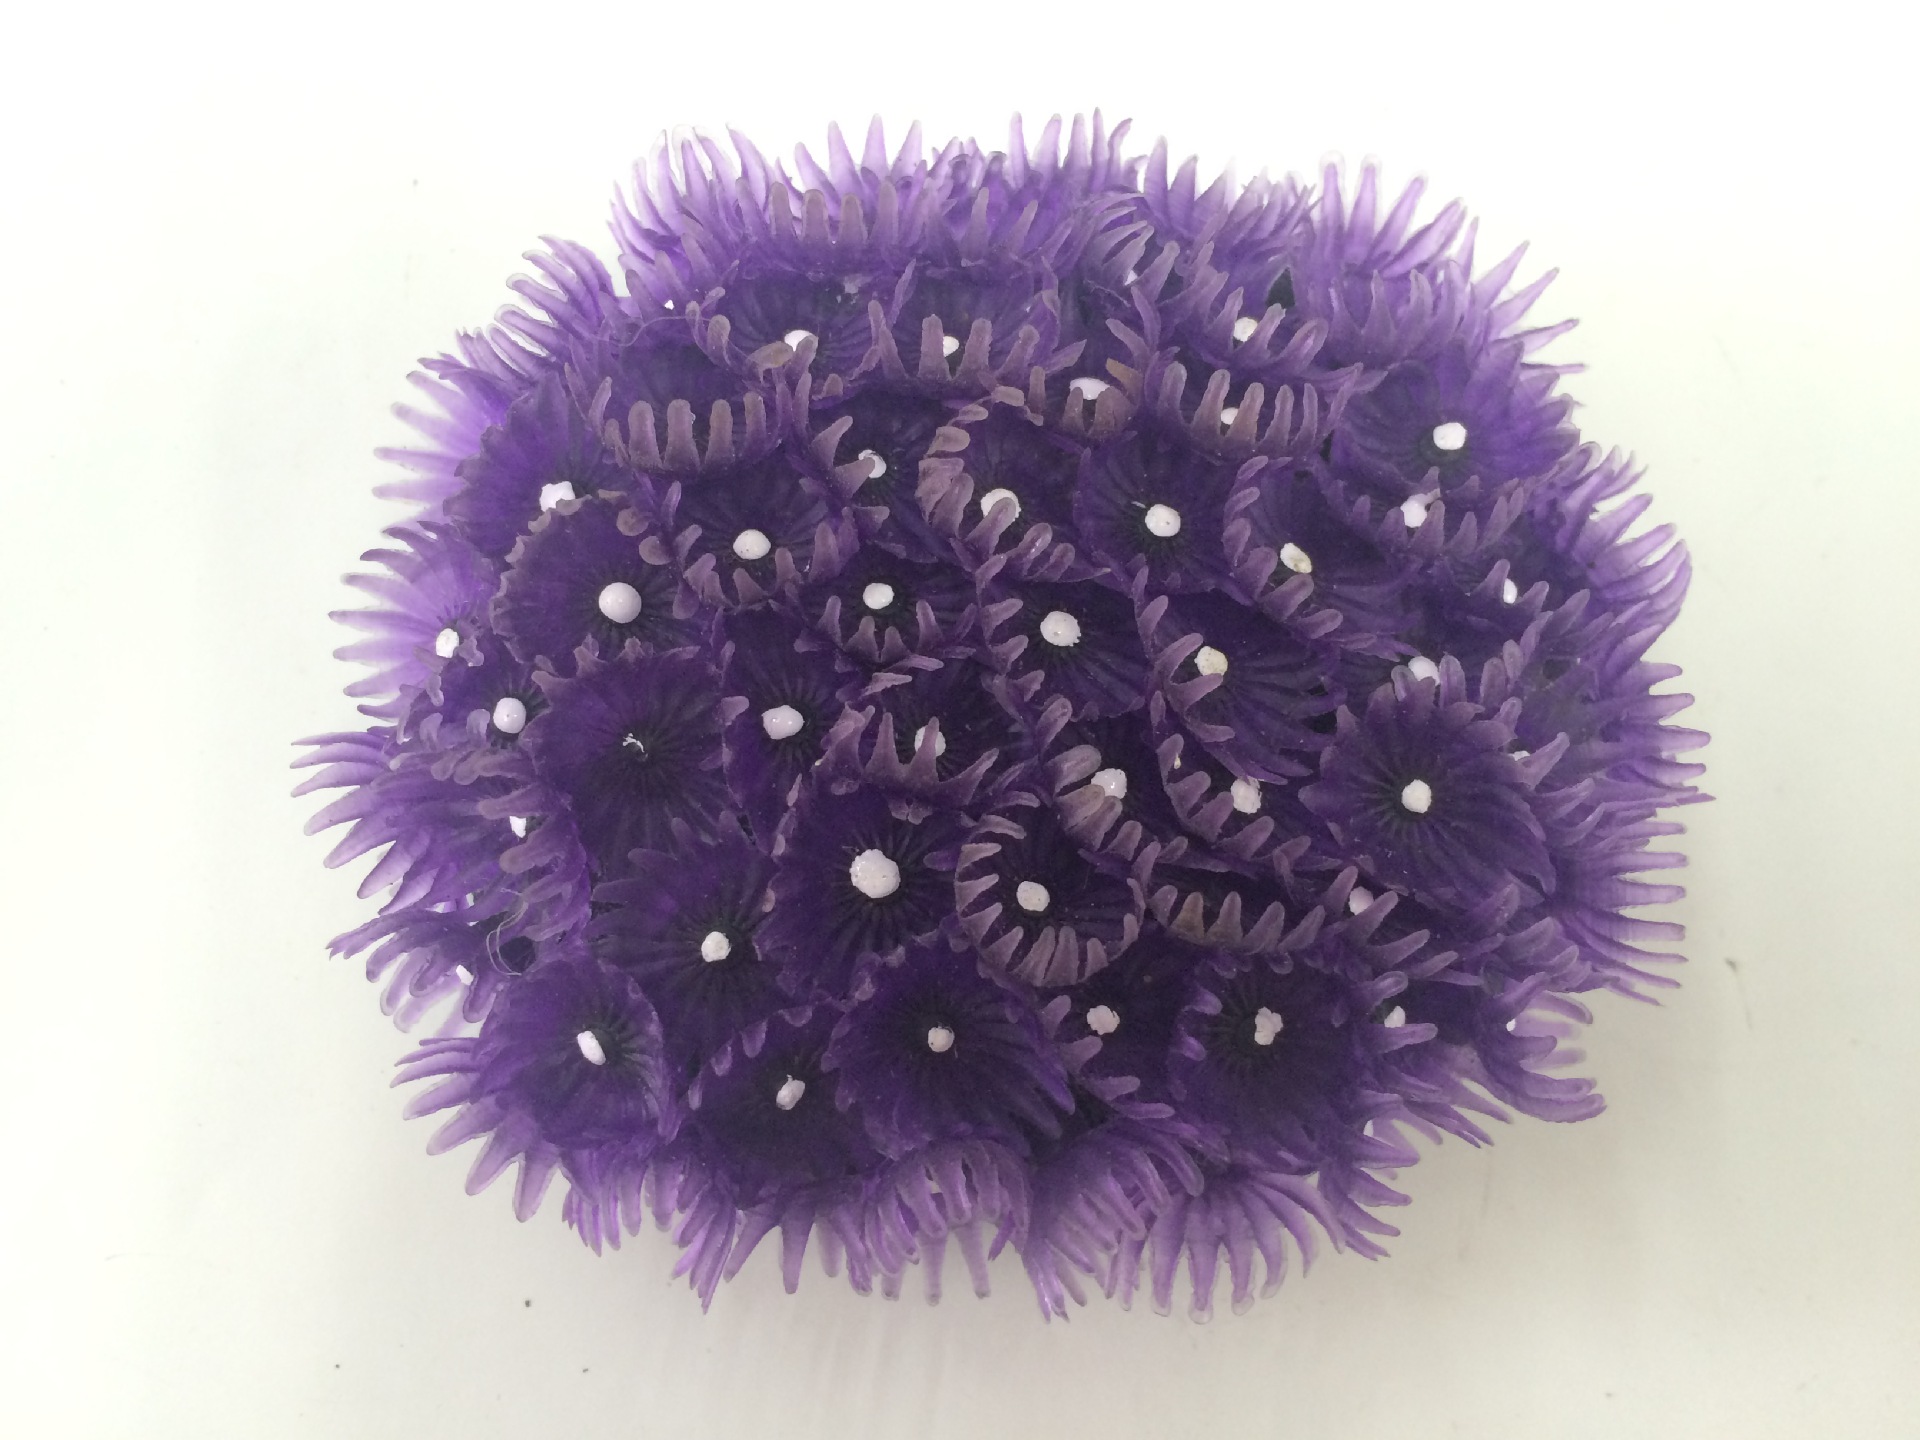 鱼缸仿真珊瑚/水族树脂工艺品造景装饰/紫色小珊瑚海胆球/批发产品图